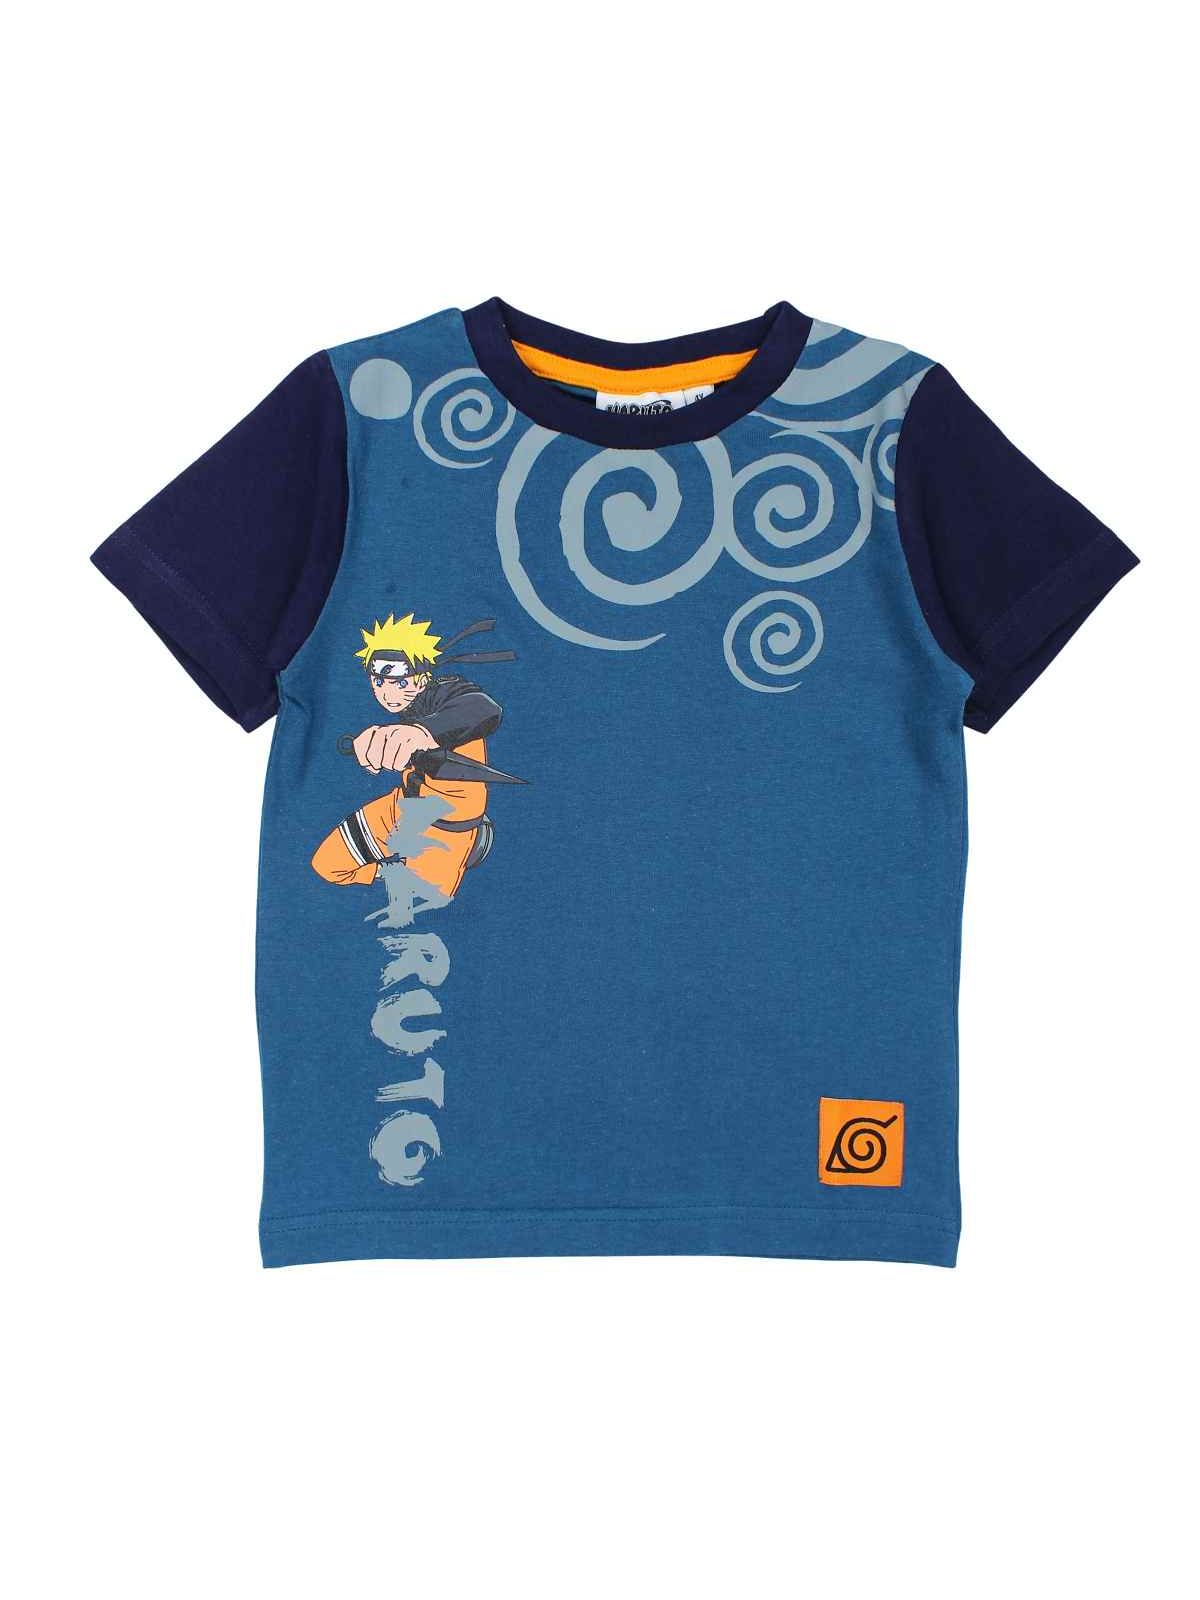 Naruto Maglietta maniche corte